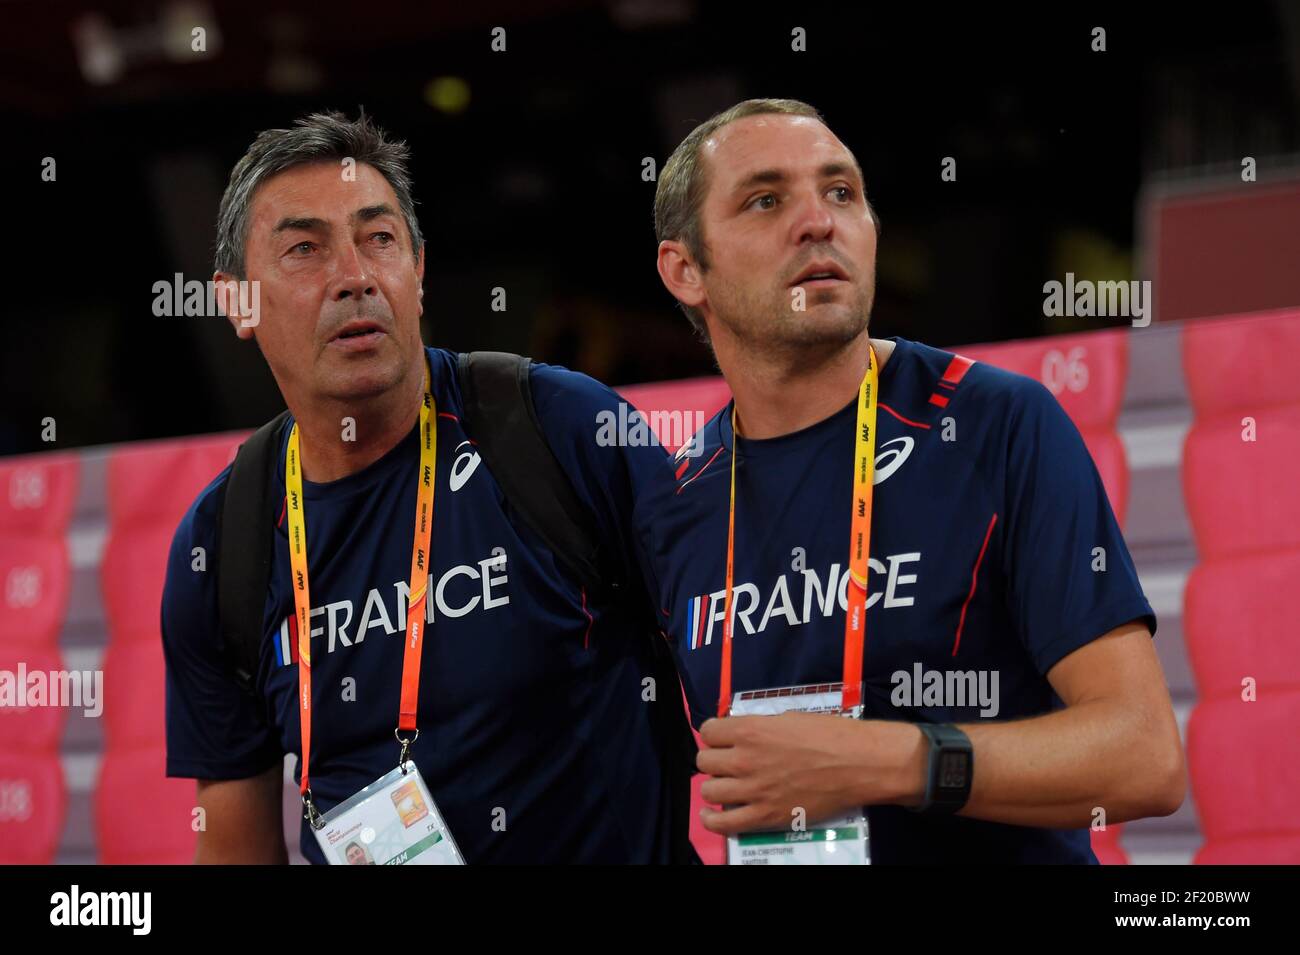 Jean-Herve Stievenart (FRA) et Jean-Christophe Sautour (FRA) coachs de  Jeanine Assani Issouf (FRA) pendant les Championnats du monde de l'IAAF,  Beijing 2015, au Stade National, à Beijing, Chine, jour 1, le 22